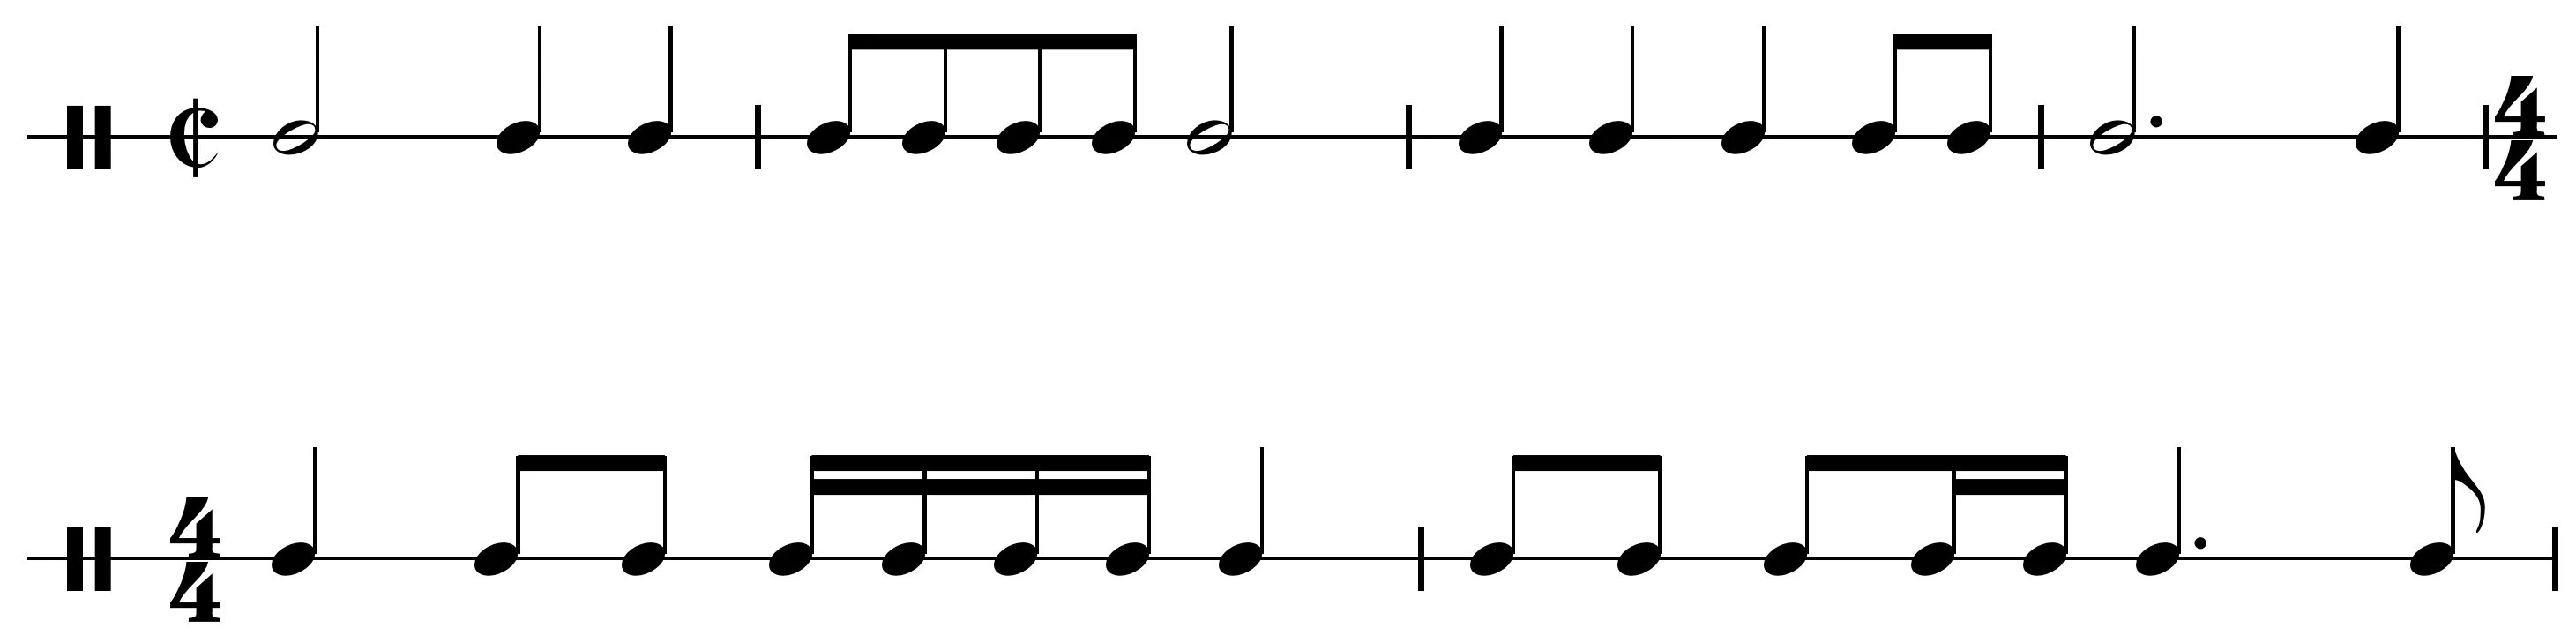 Музыка 4 на 4 почему. Ритмический рисунок 4 четверти. Ритм длительности нот ритмические упражнения. Ритмические рисунки в размере 4/4. Ритмический рисунок на 4/4 8 тактов.